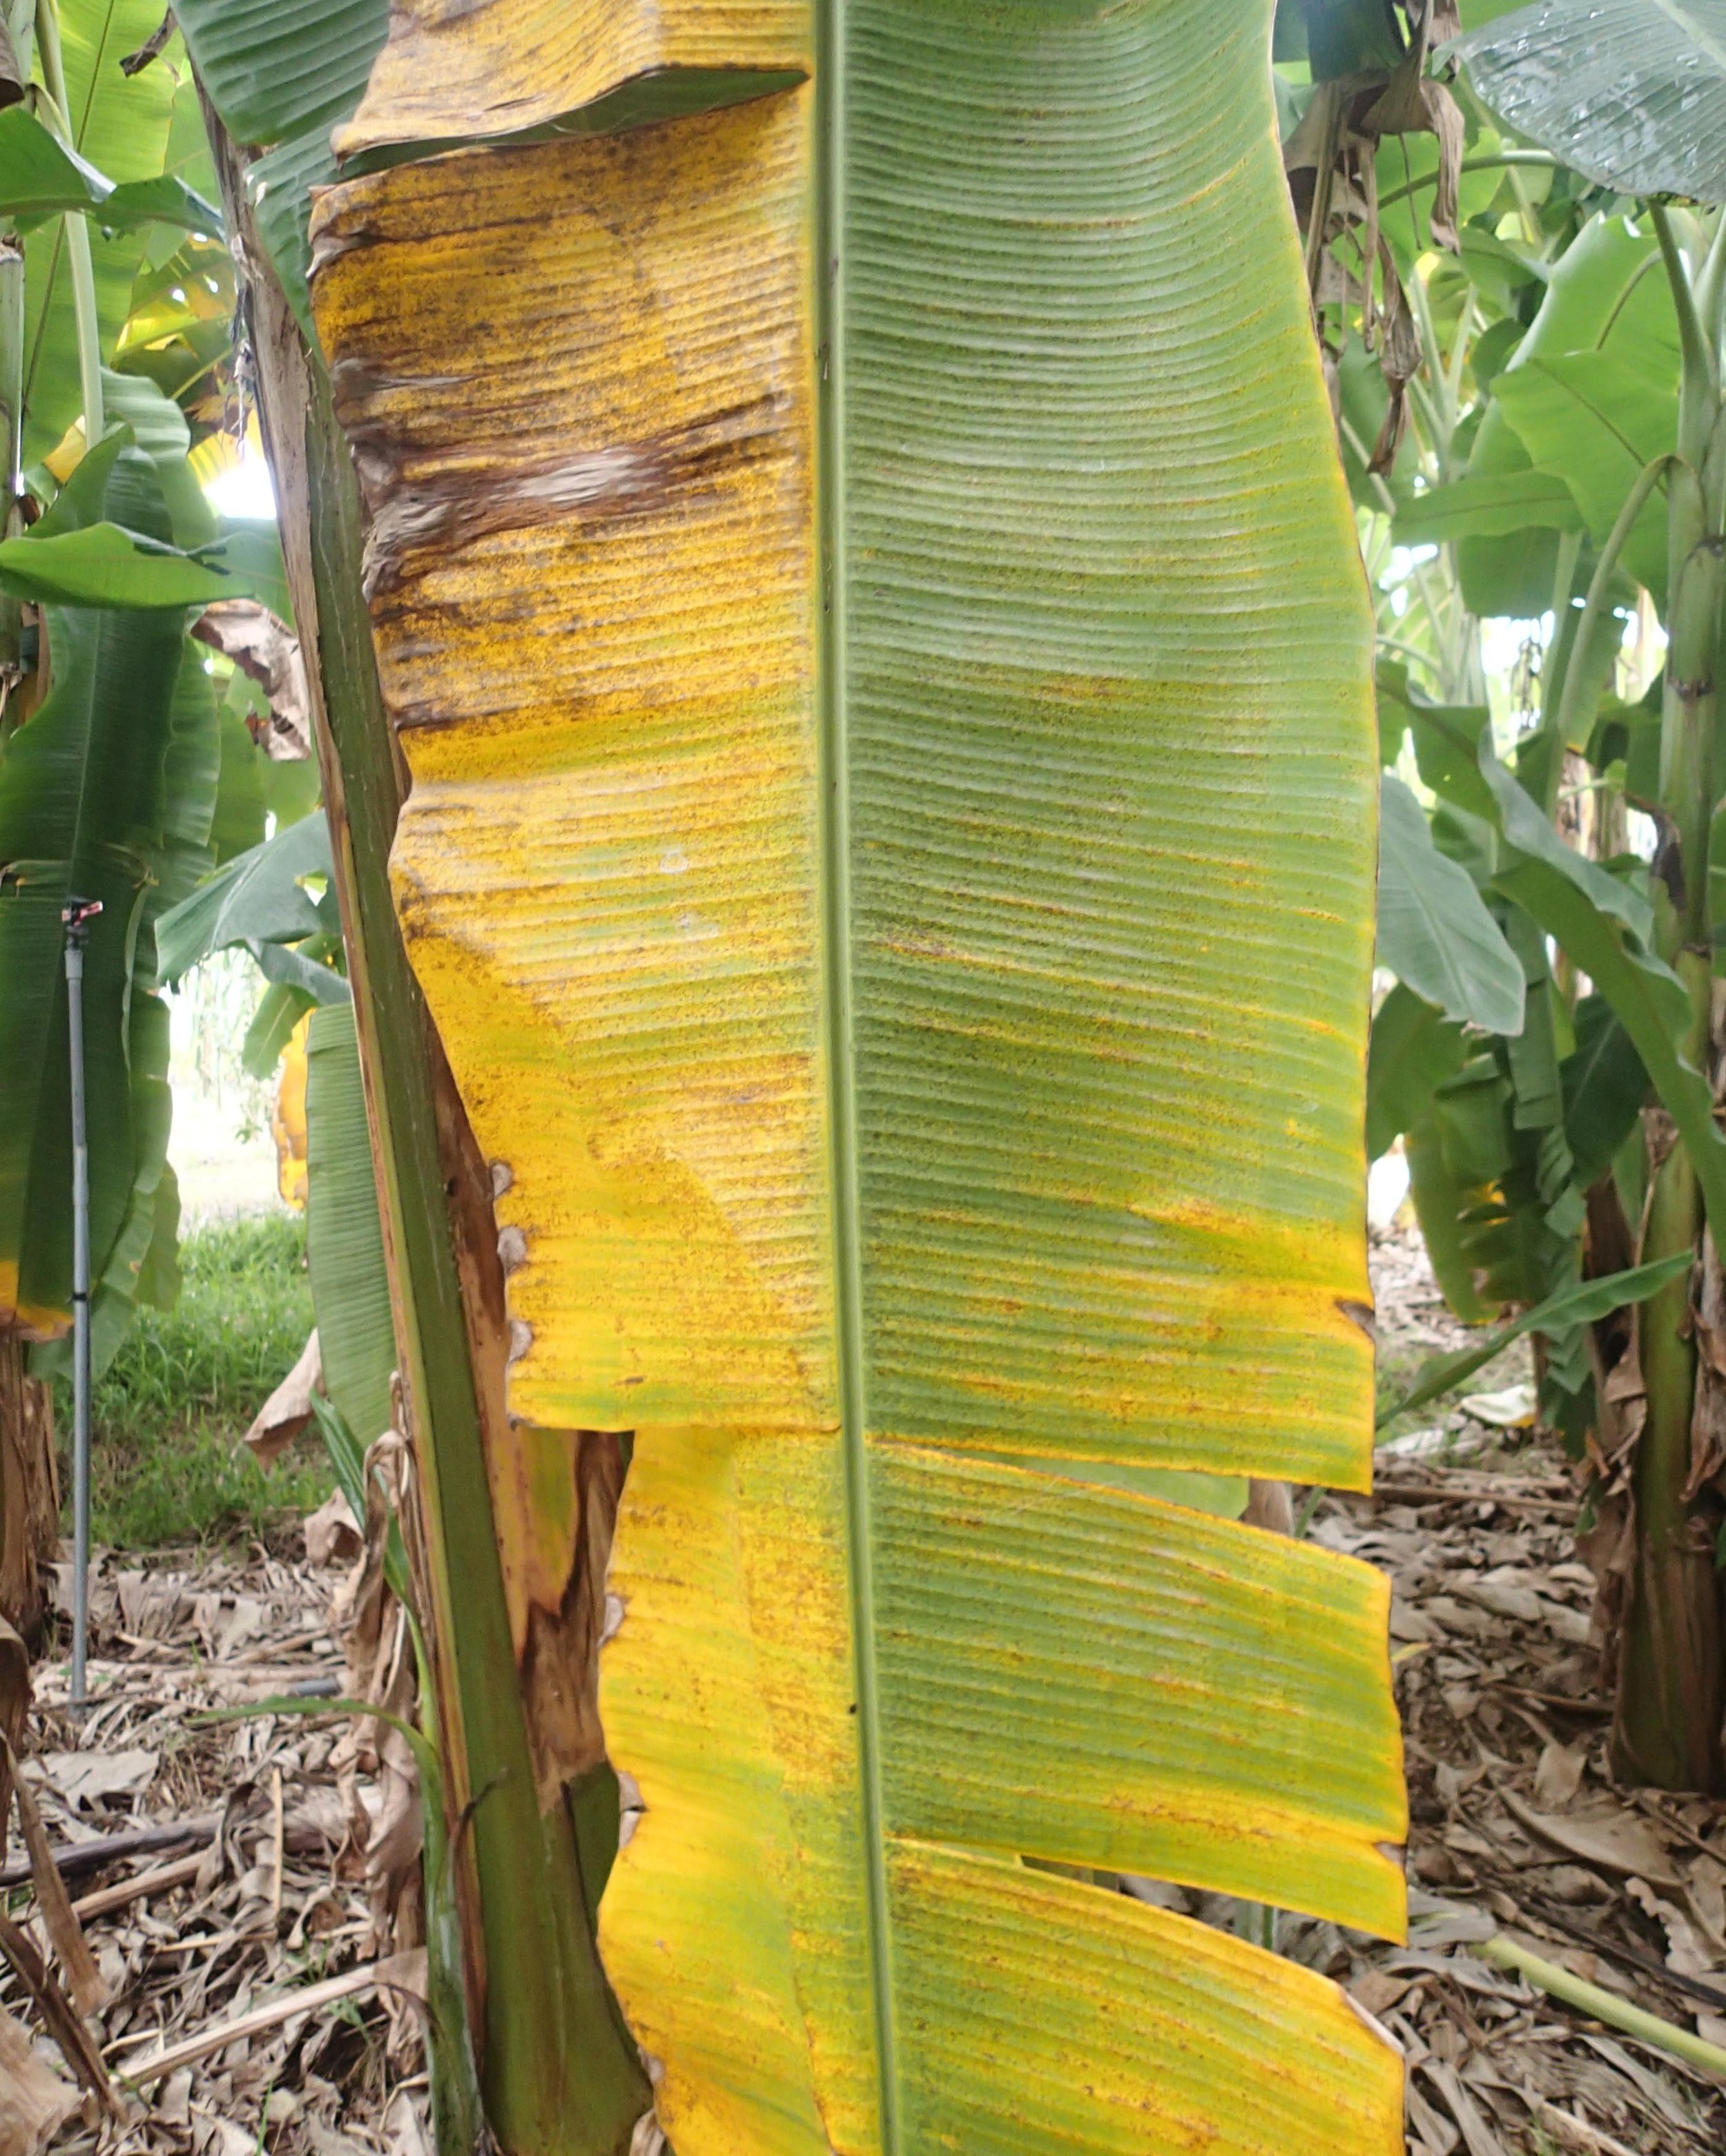 diseased banana leaf.jpg